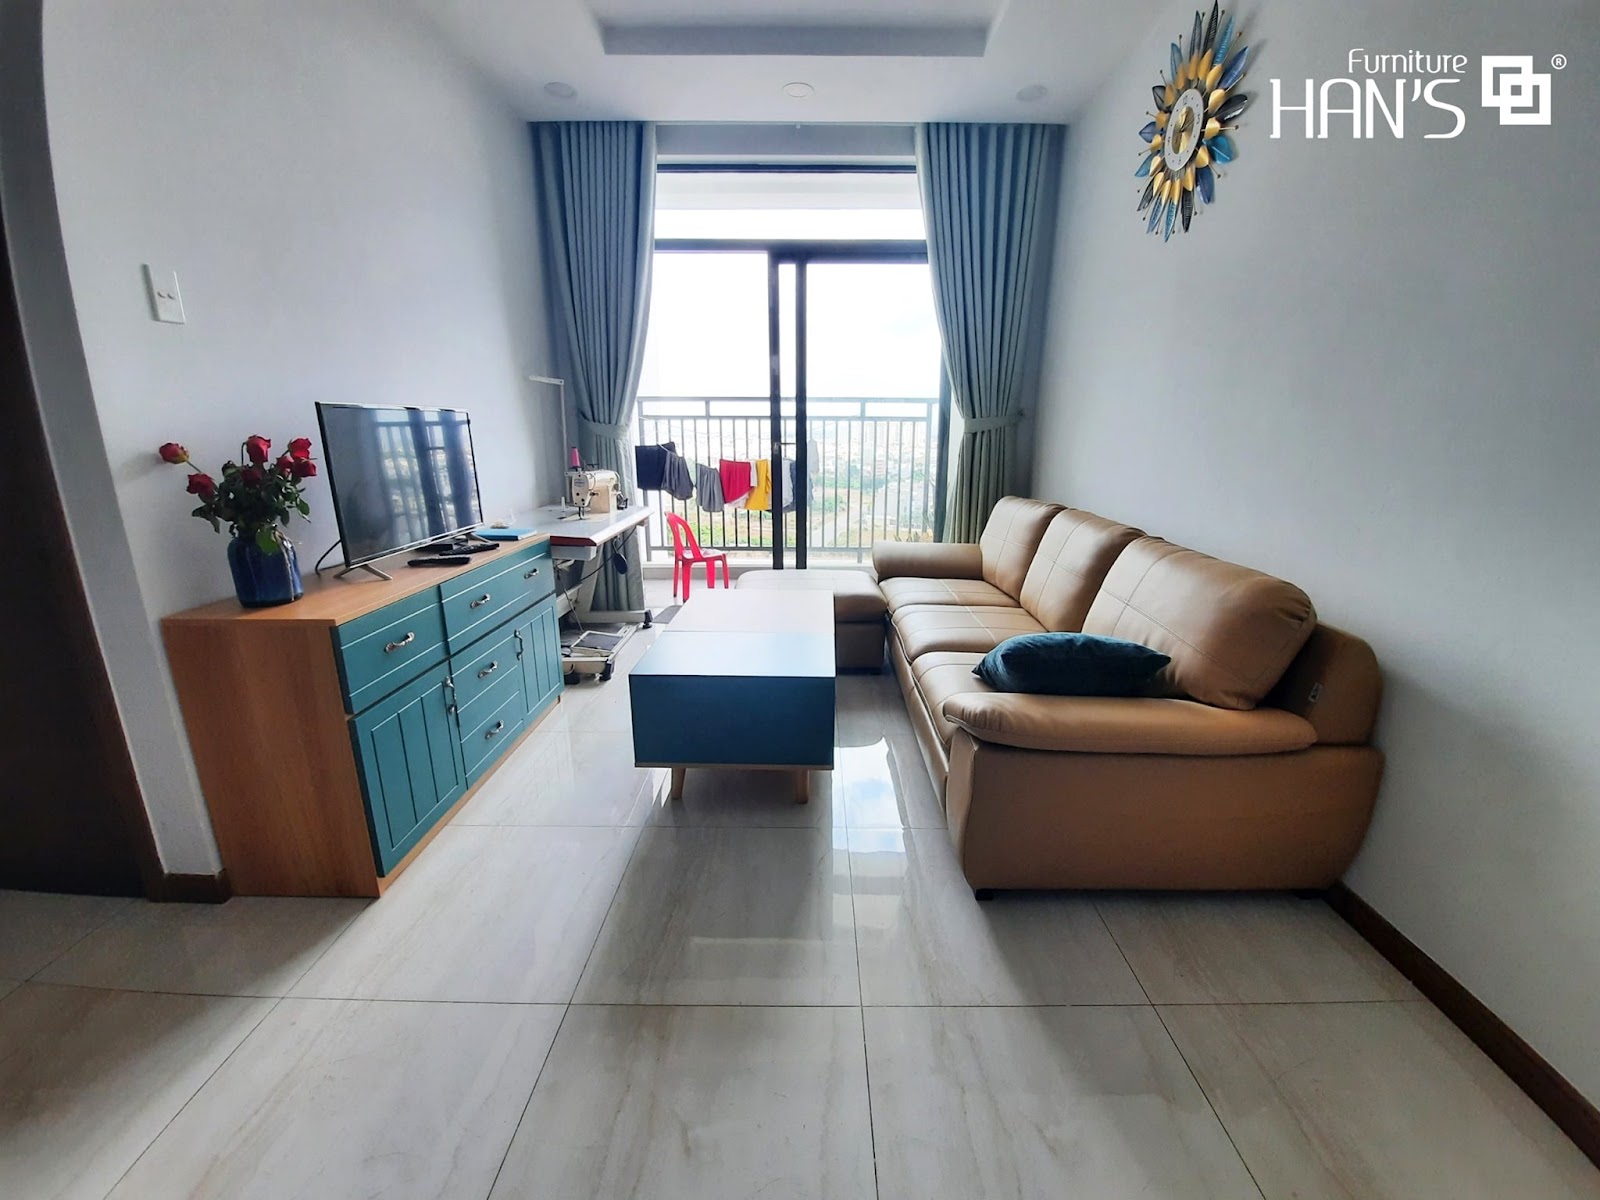 Phòng khách chung cư hiện nay thường có diện tích nhỏ, từ cửa ra vào có thể dễ dàng quan sát toàn bộ không gian căn hộ